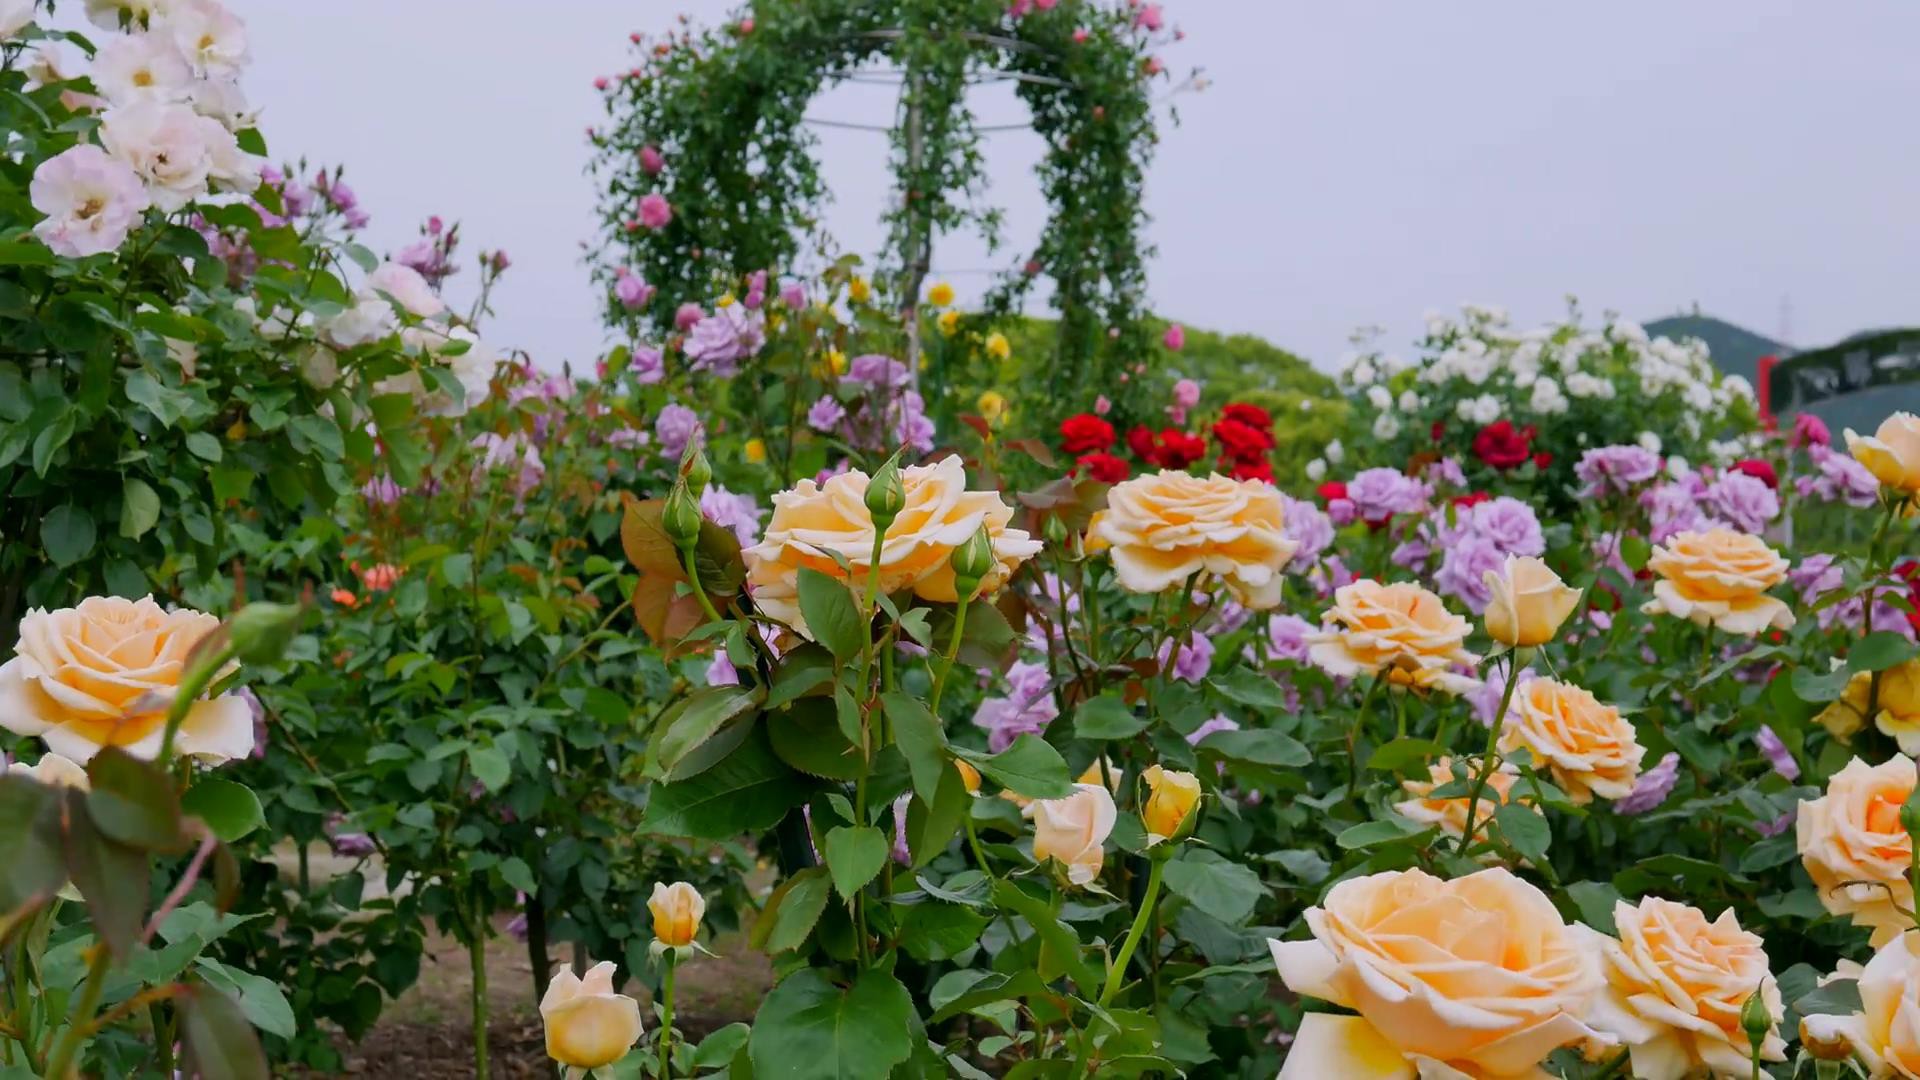 Đến thăm khu vườn trên đảo ở Nhật Bản với 2.600 cây hoa hồng rung rinh trước gió đẹp mê mẩn lòng người - Ảnh 19.